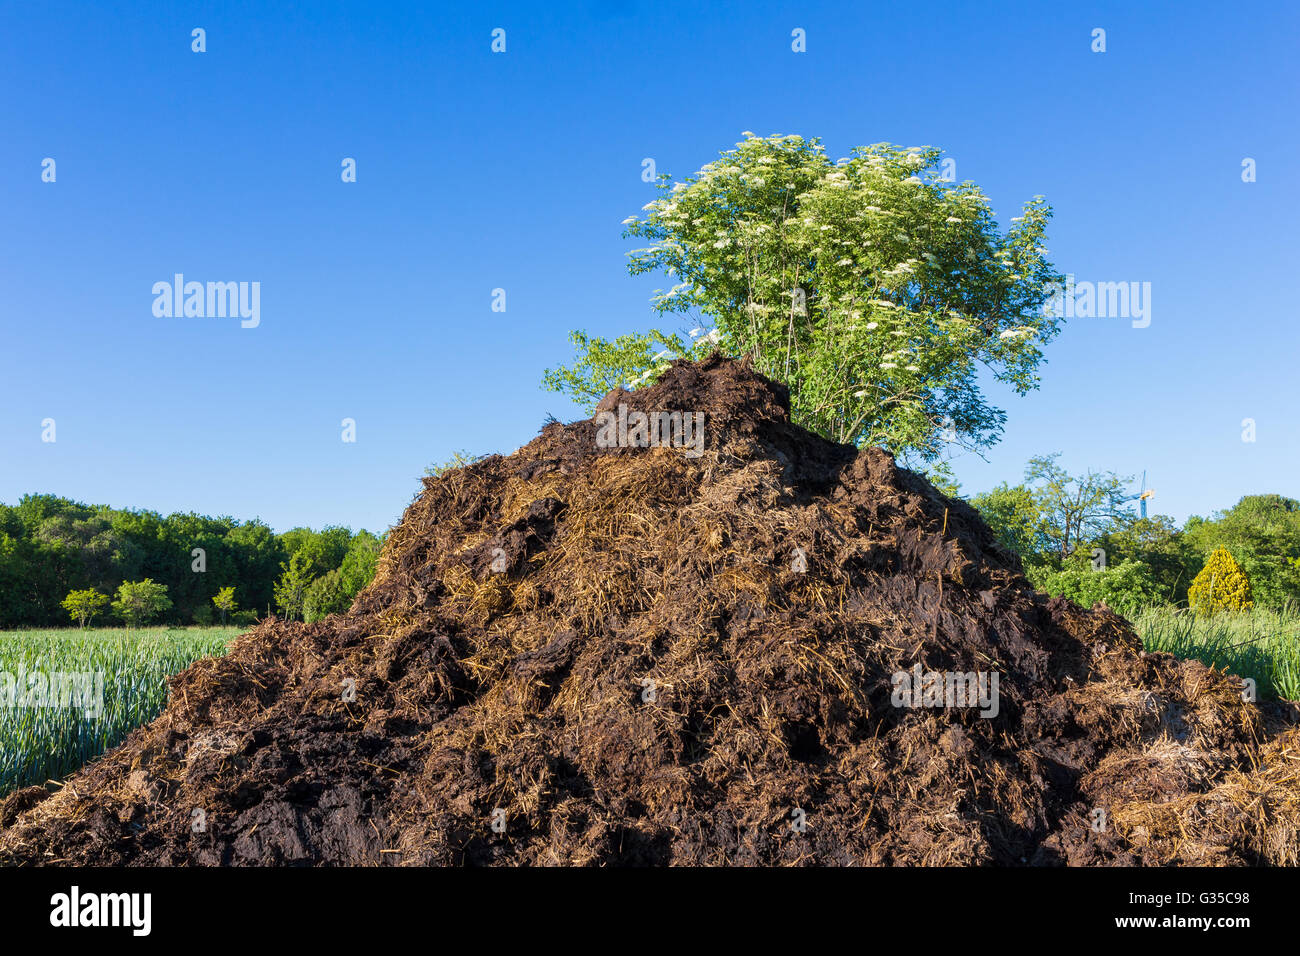 Le fumier, qui se trouve dans le champ pour fertiliser les cultures. Printemps. close-up Banque D'Images